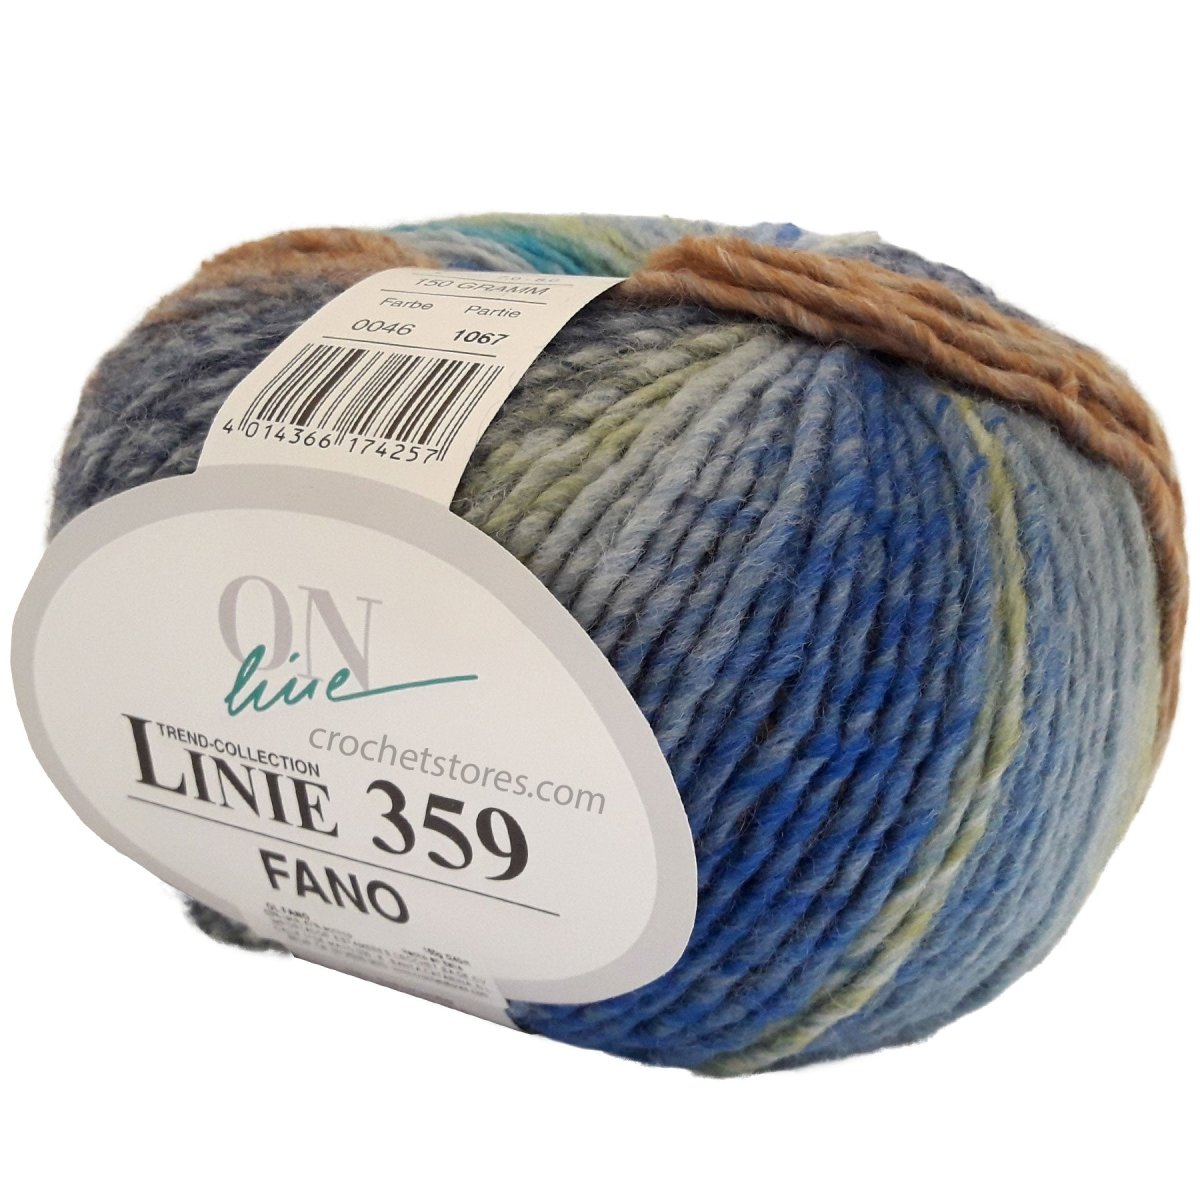 FANO - Crochetstores110359-0464014366174257